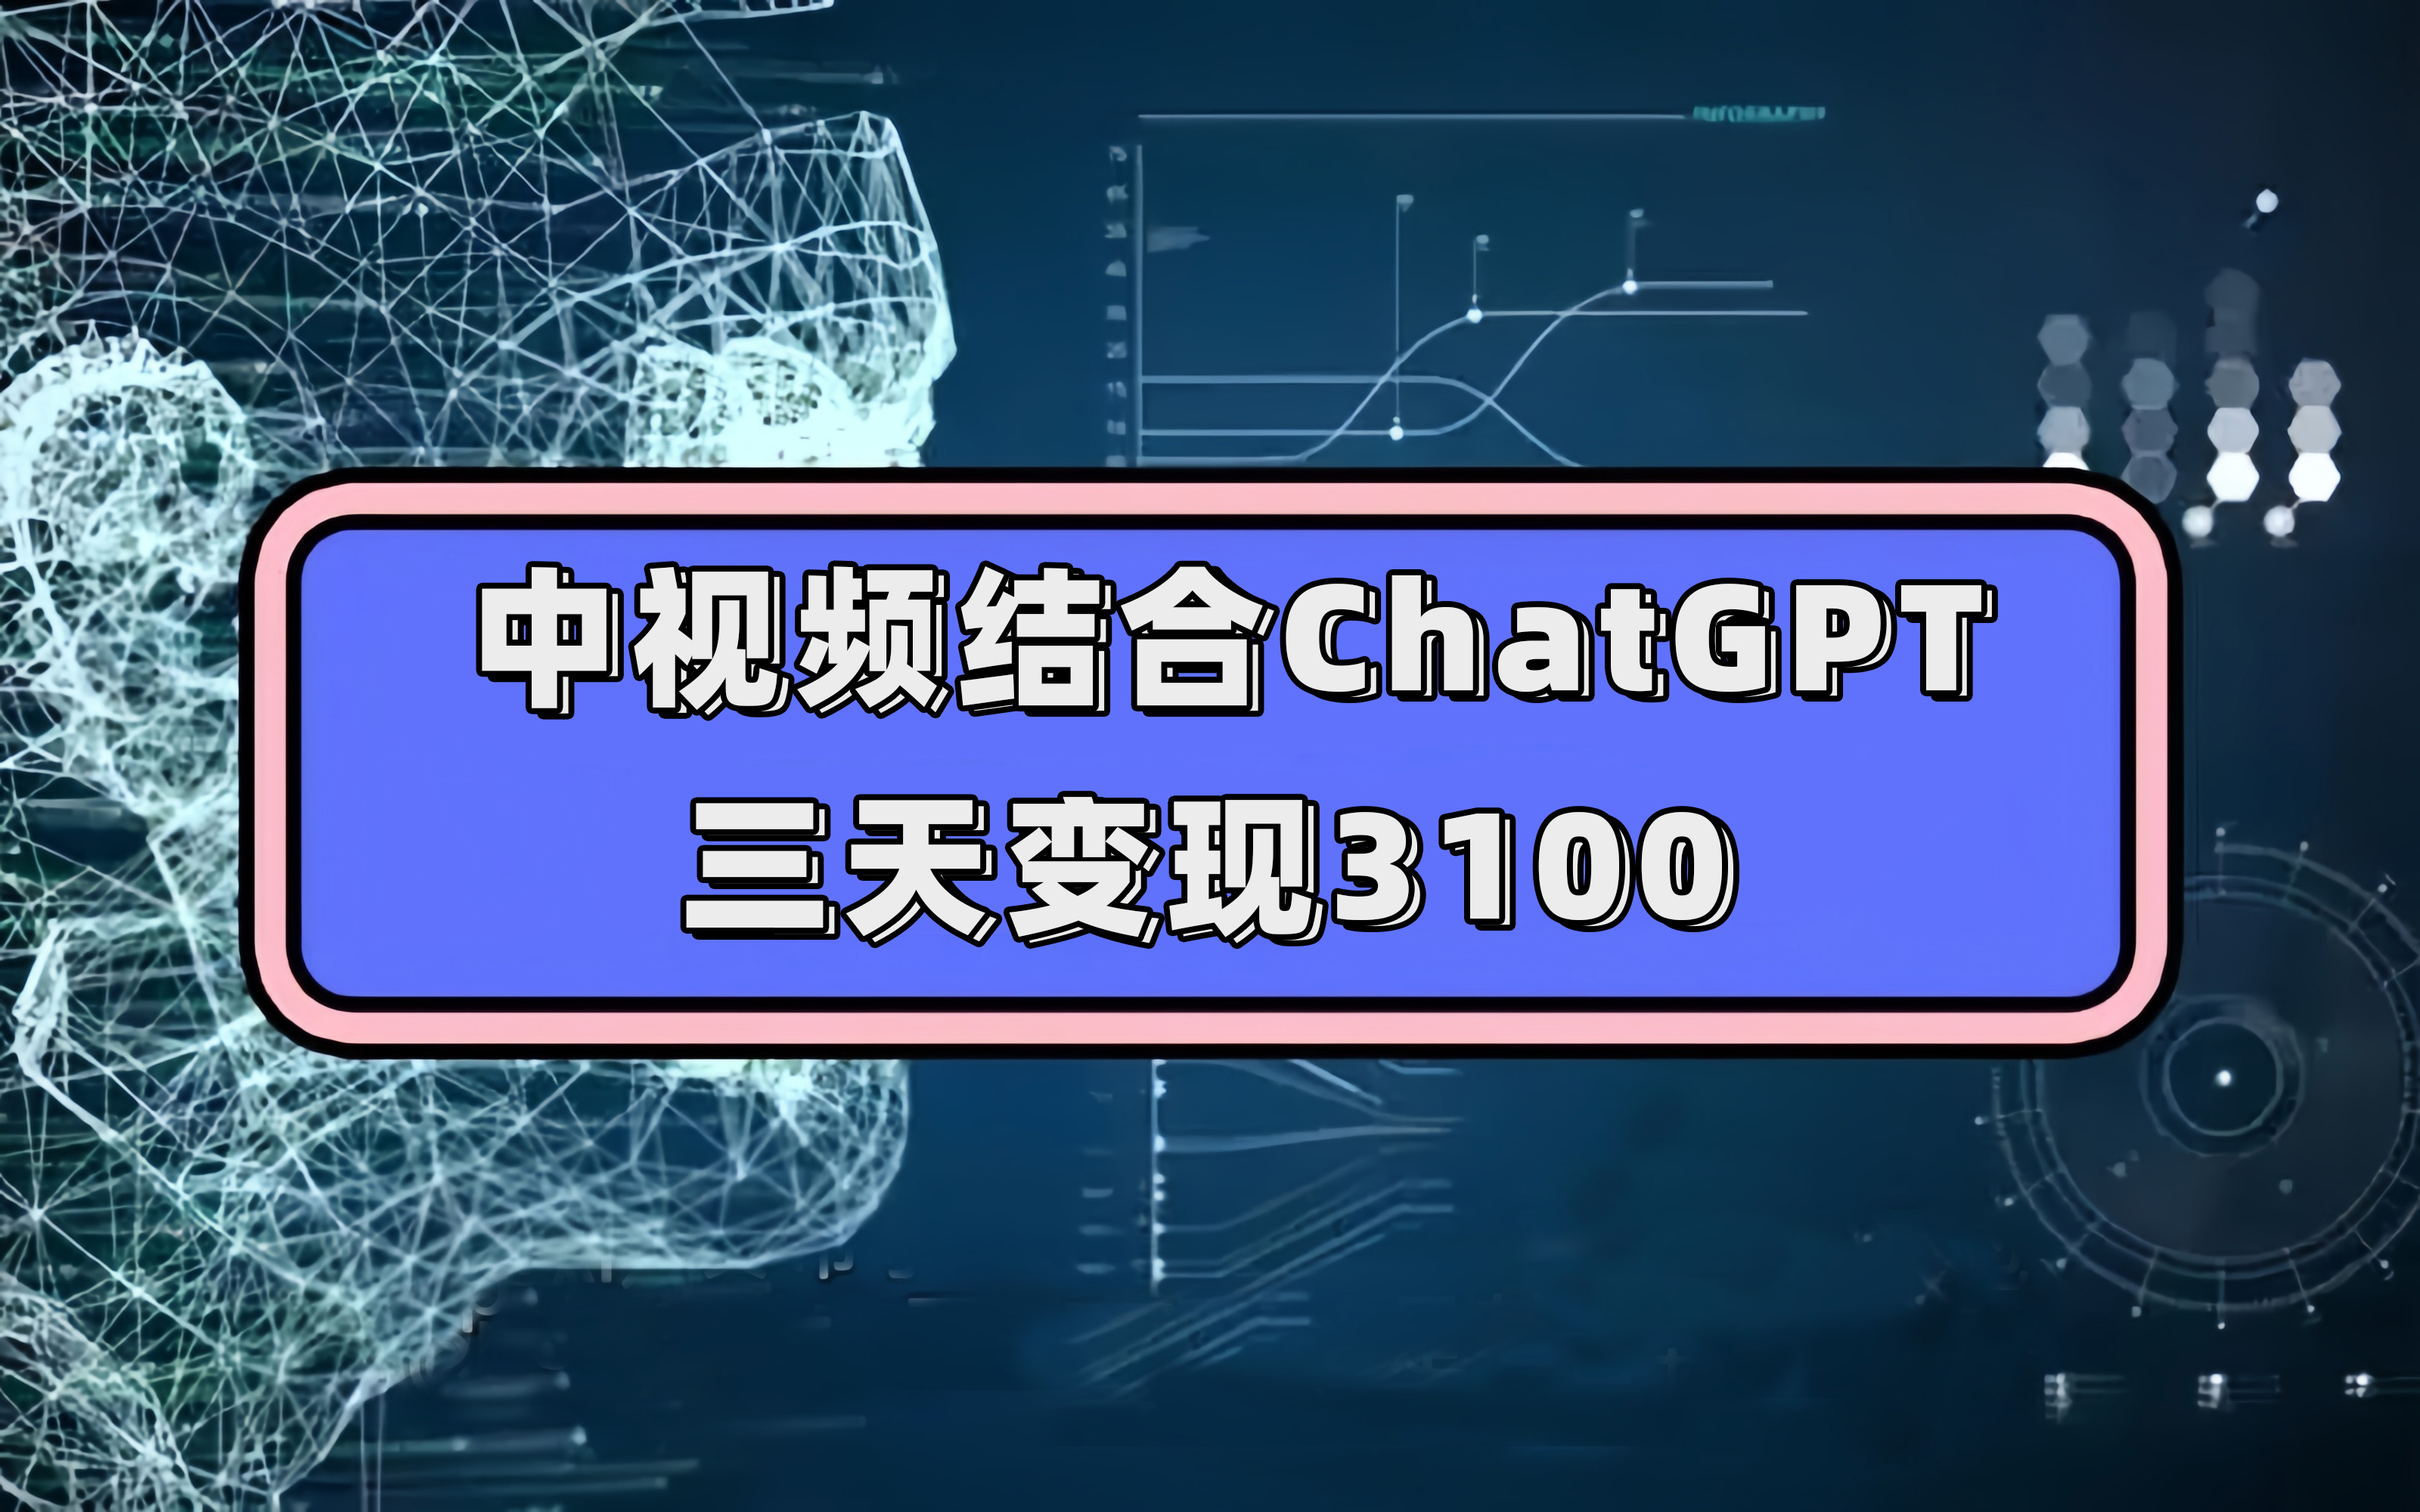 （7421期）中视频结合ChatGPT，三天变现3100，人人可做 玩法思路实操教学！插图